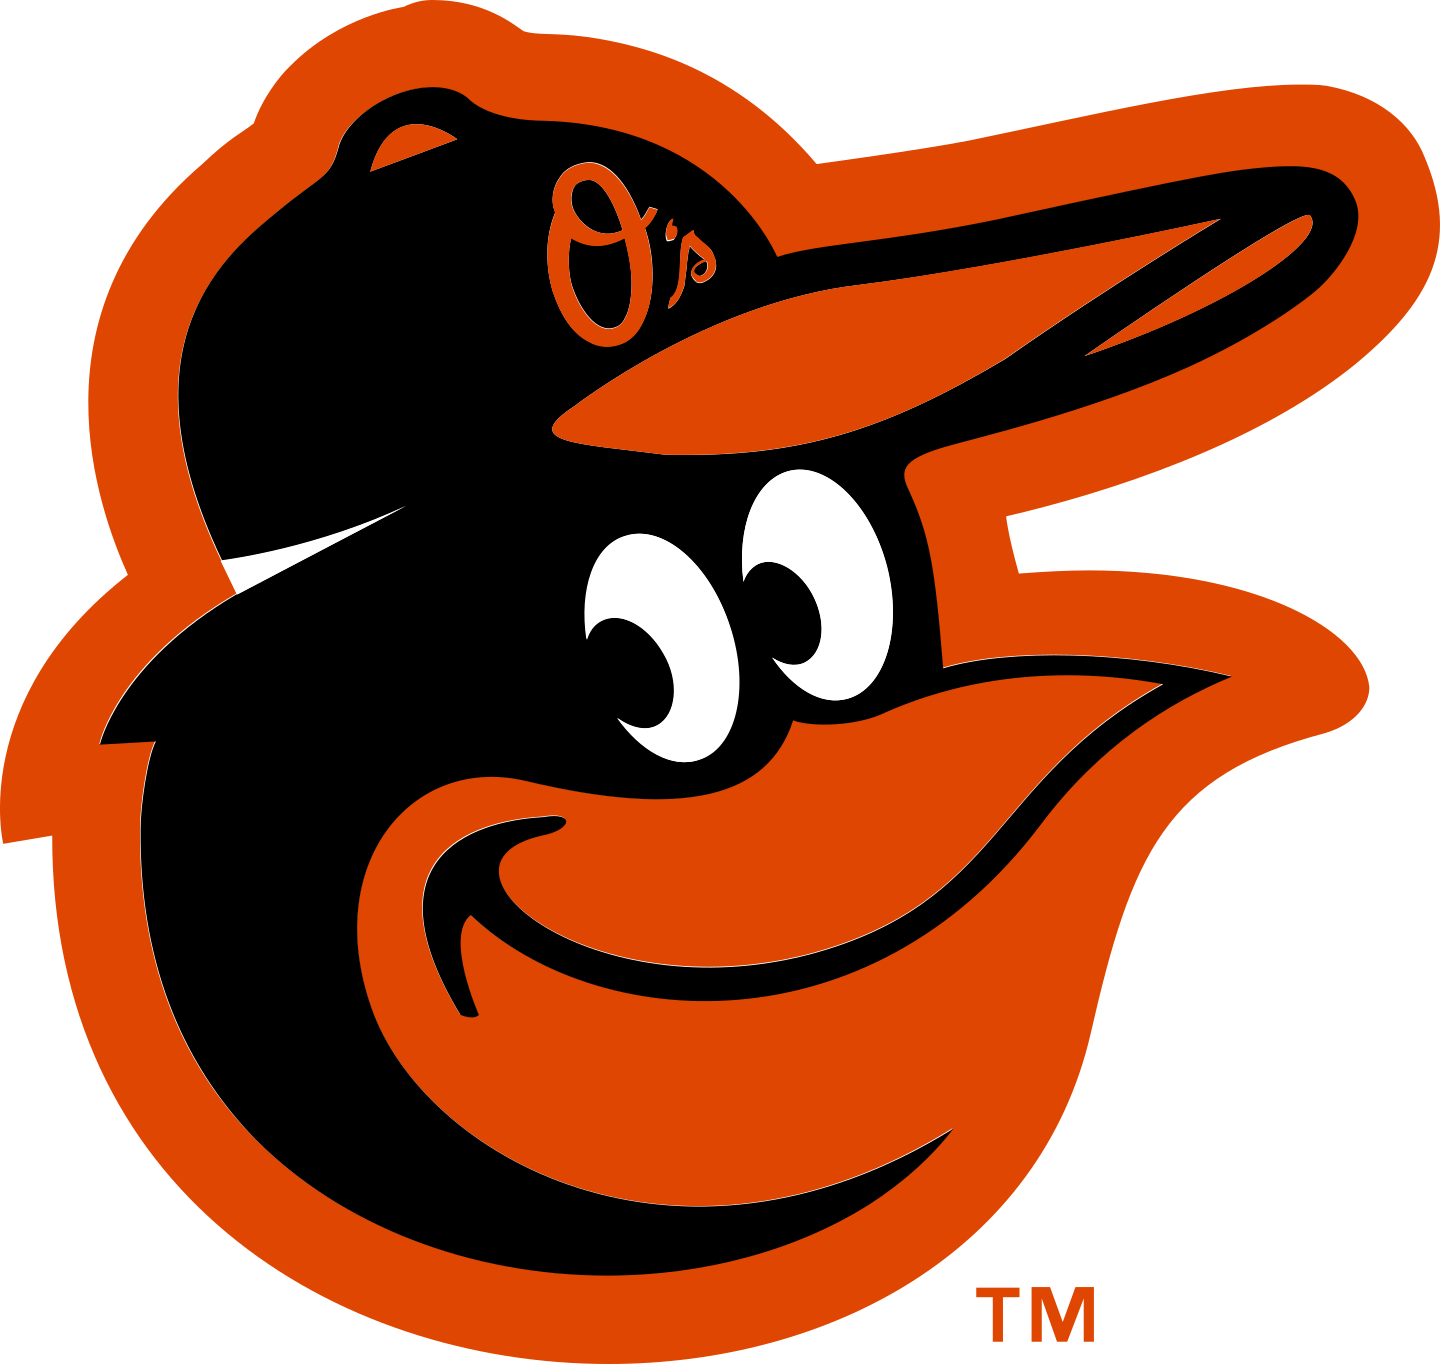 baltimore orioles logo 2 - Baltimore Orioles Logo